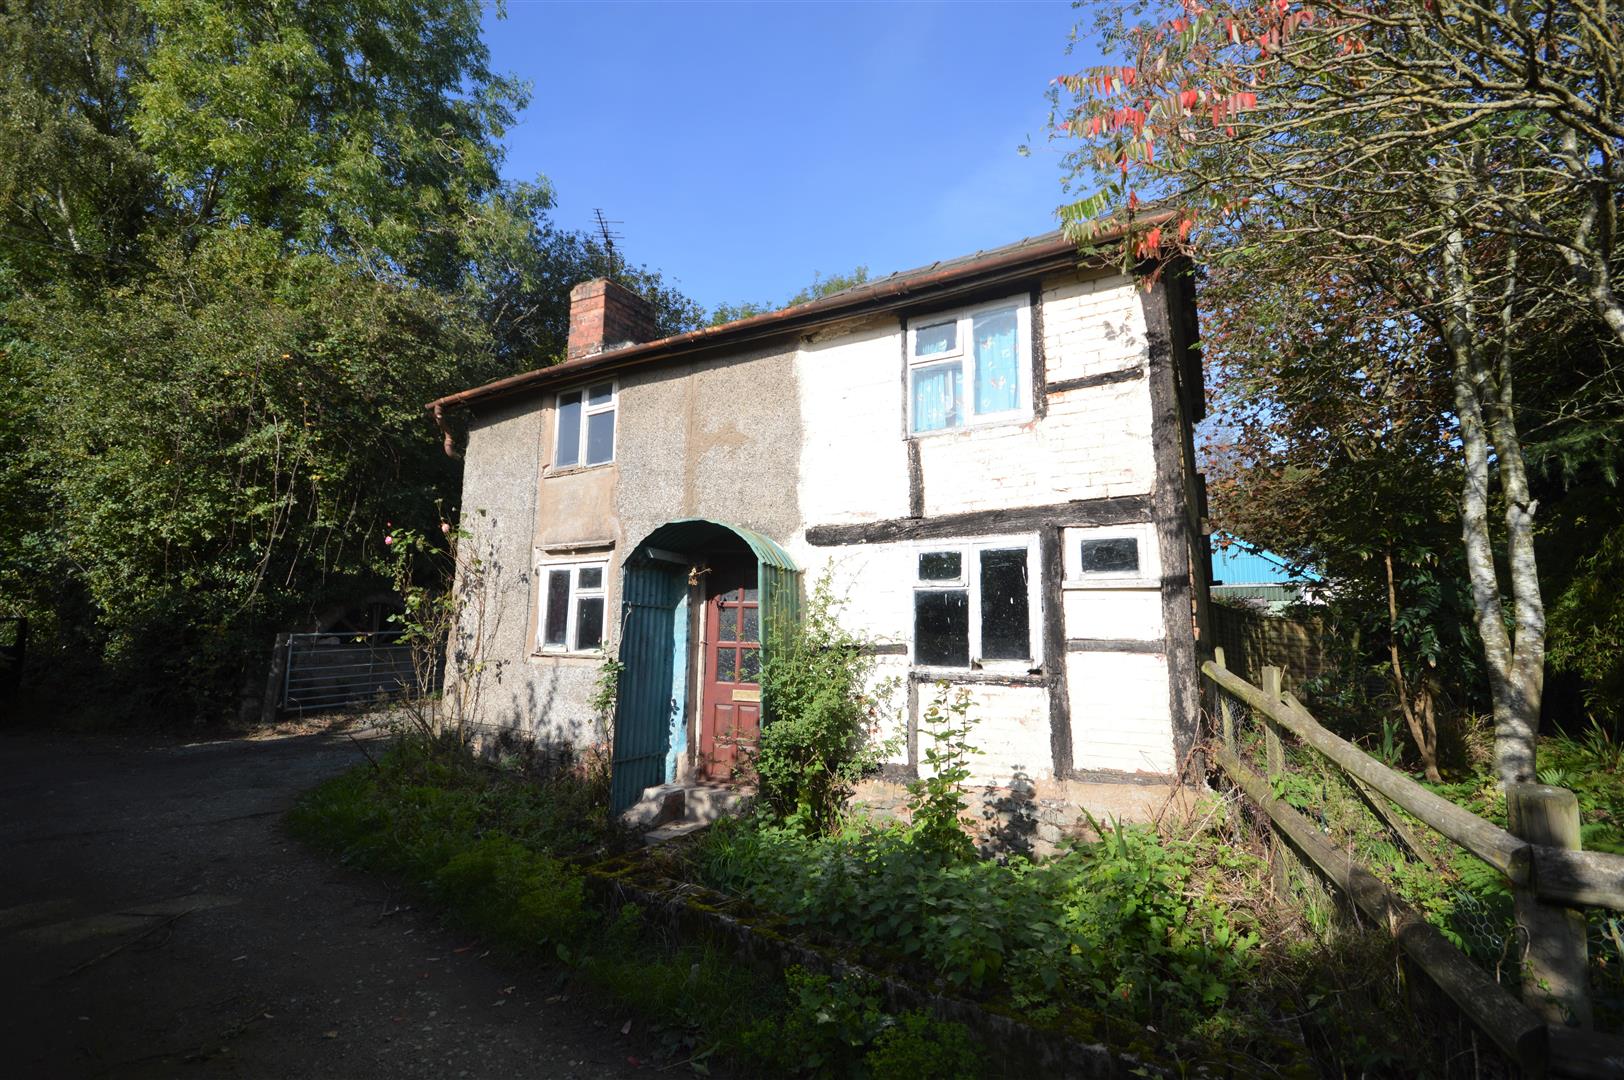 2 bed cottage for sale in Pembridge, HR6